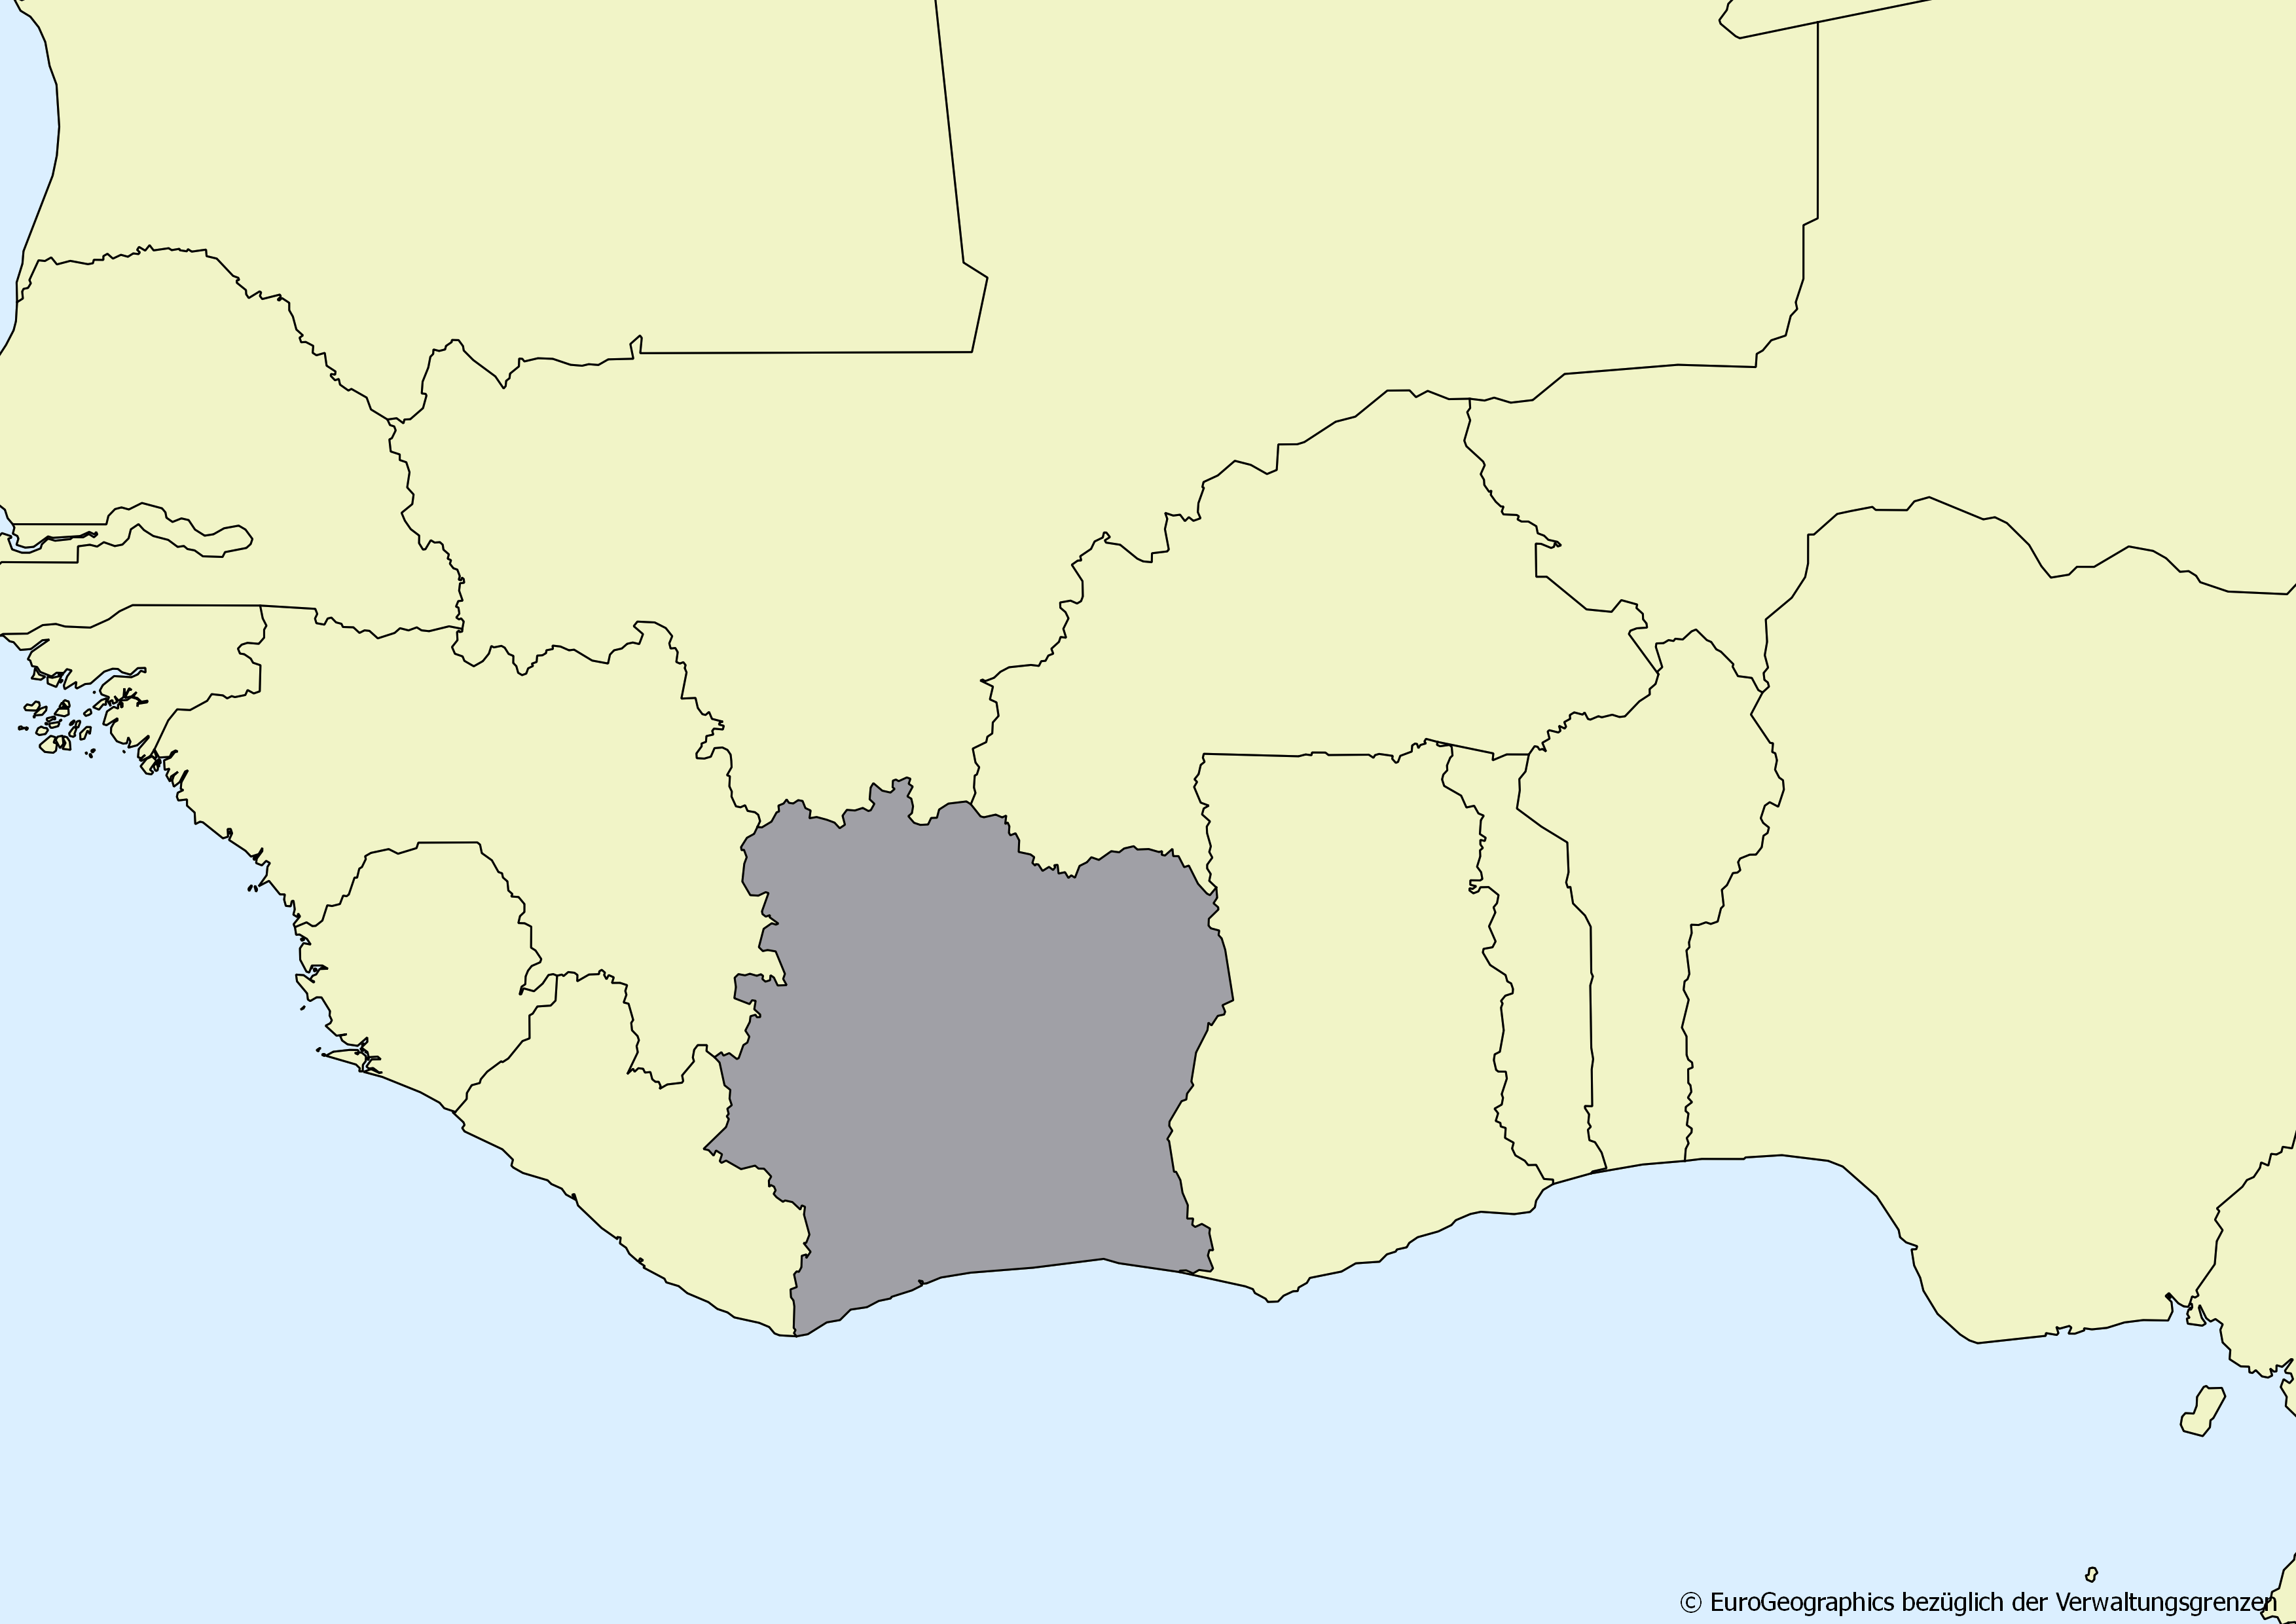 Ausschnitt einer Karte des afrikanischen Kontinents mit Ländergrenzen. Im Zentrum steht Côte d'Ivoire grau hervorgehoben